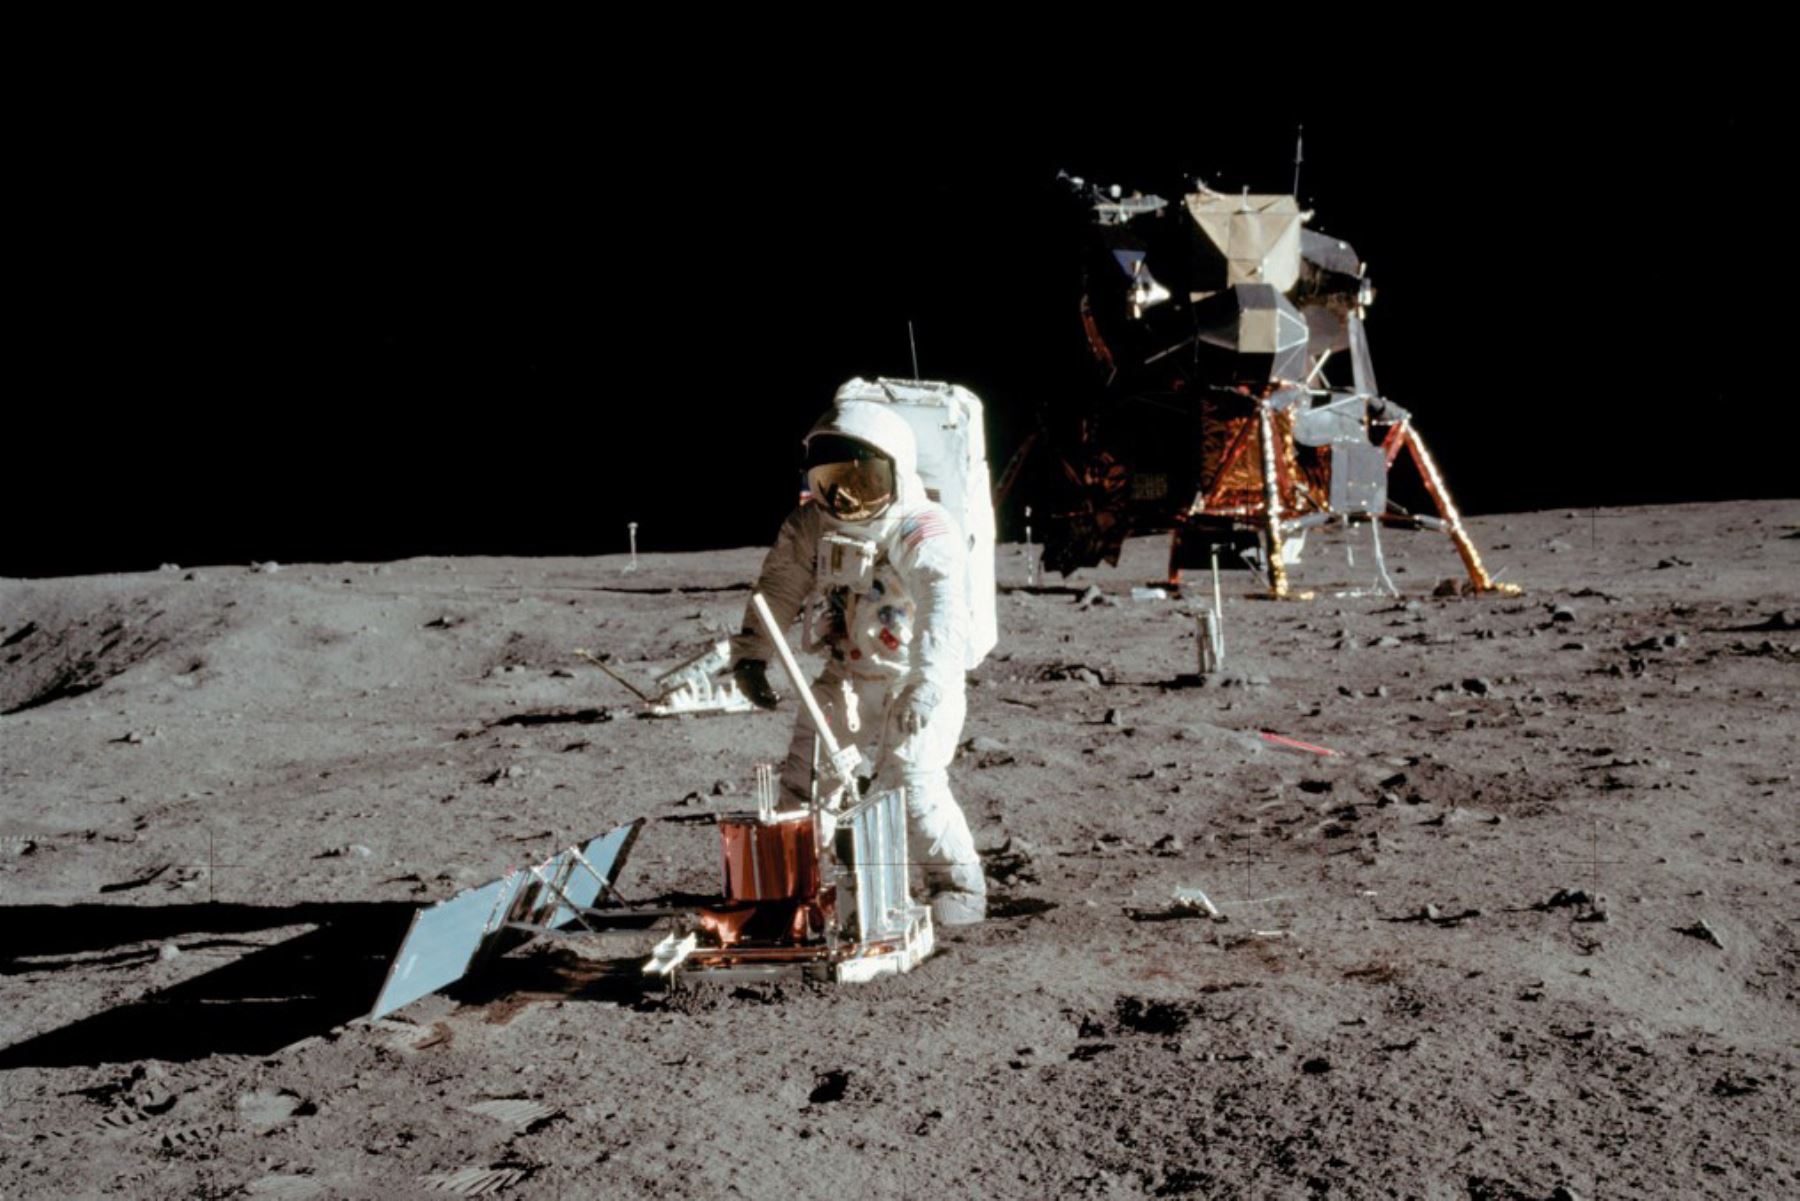 El astronauta estadounidense Buzz Aldrin de la misión espacial Apolo 11 es visto realizando experimentos en la superficie de la luna en una imagen tomada por Neil Armstrong después de que ambos bajaron la escalera del módulo lunar "Eagle". Foto de la NASA / AFP